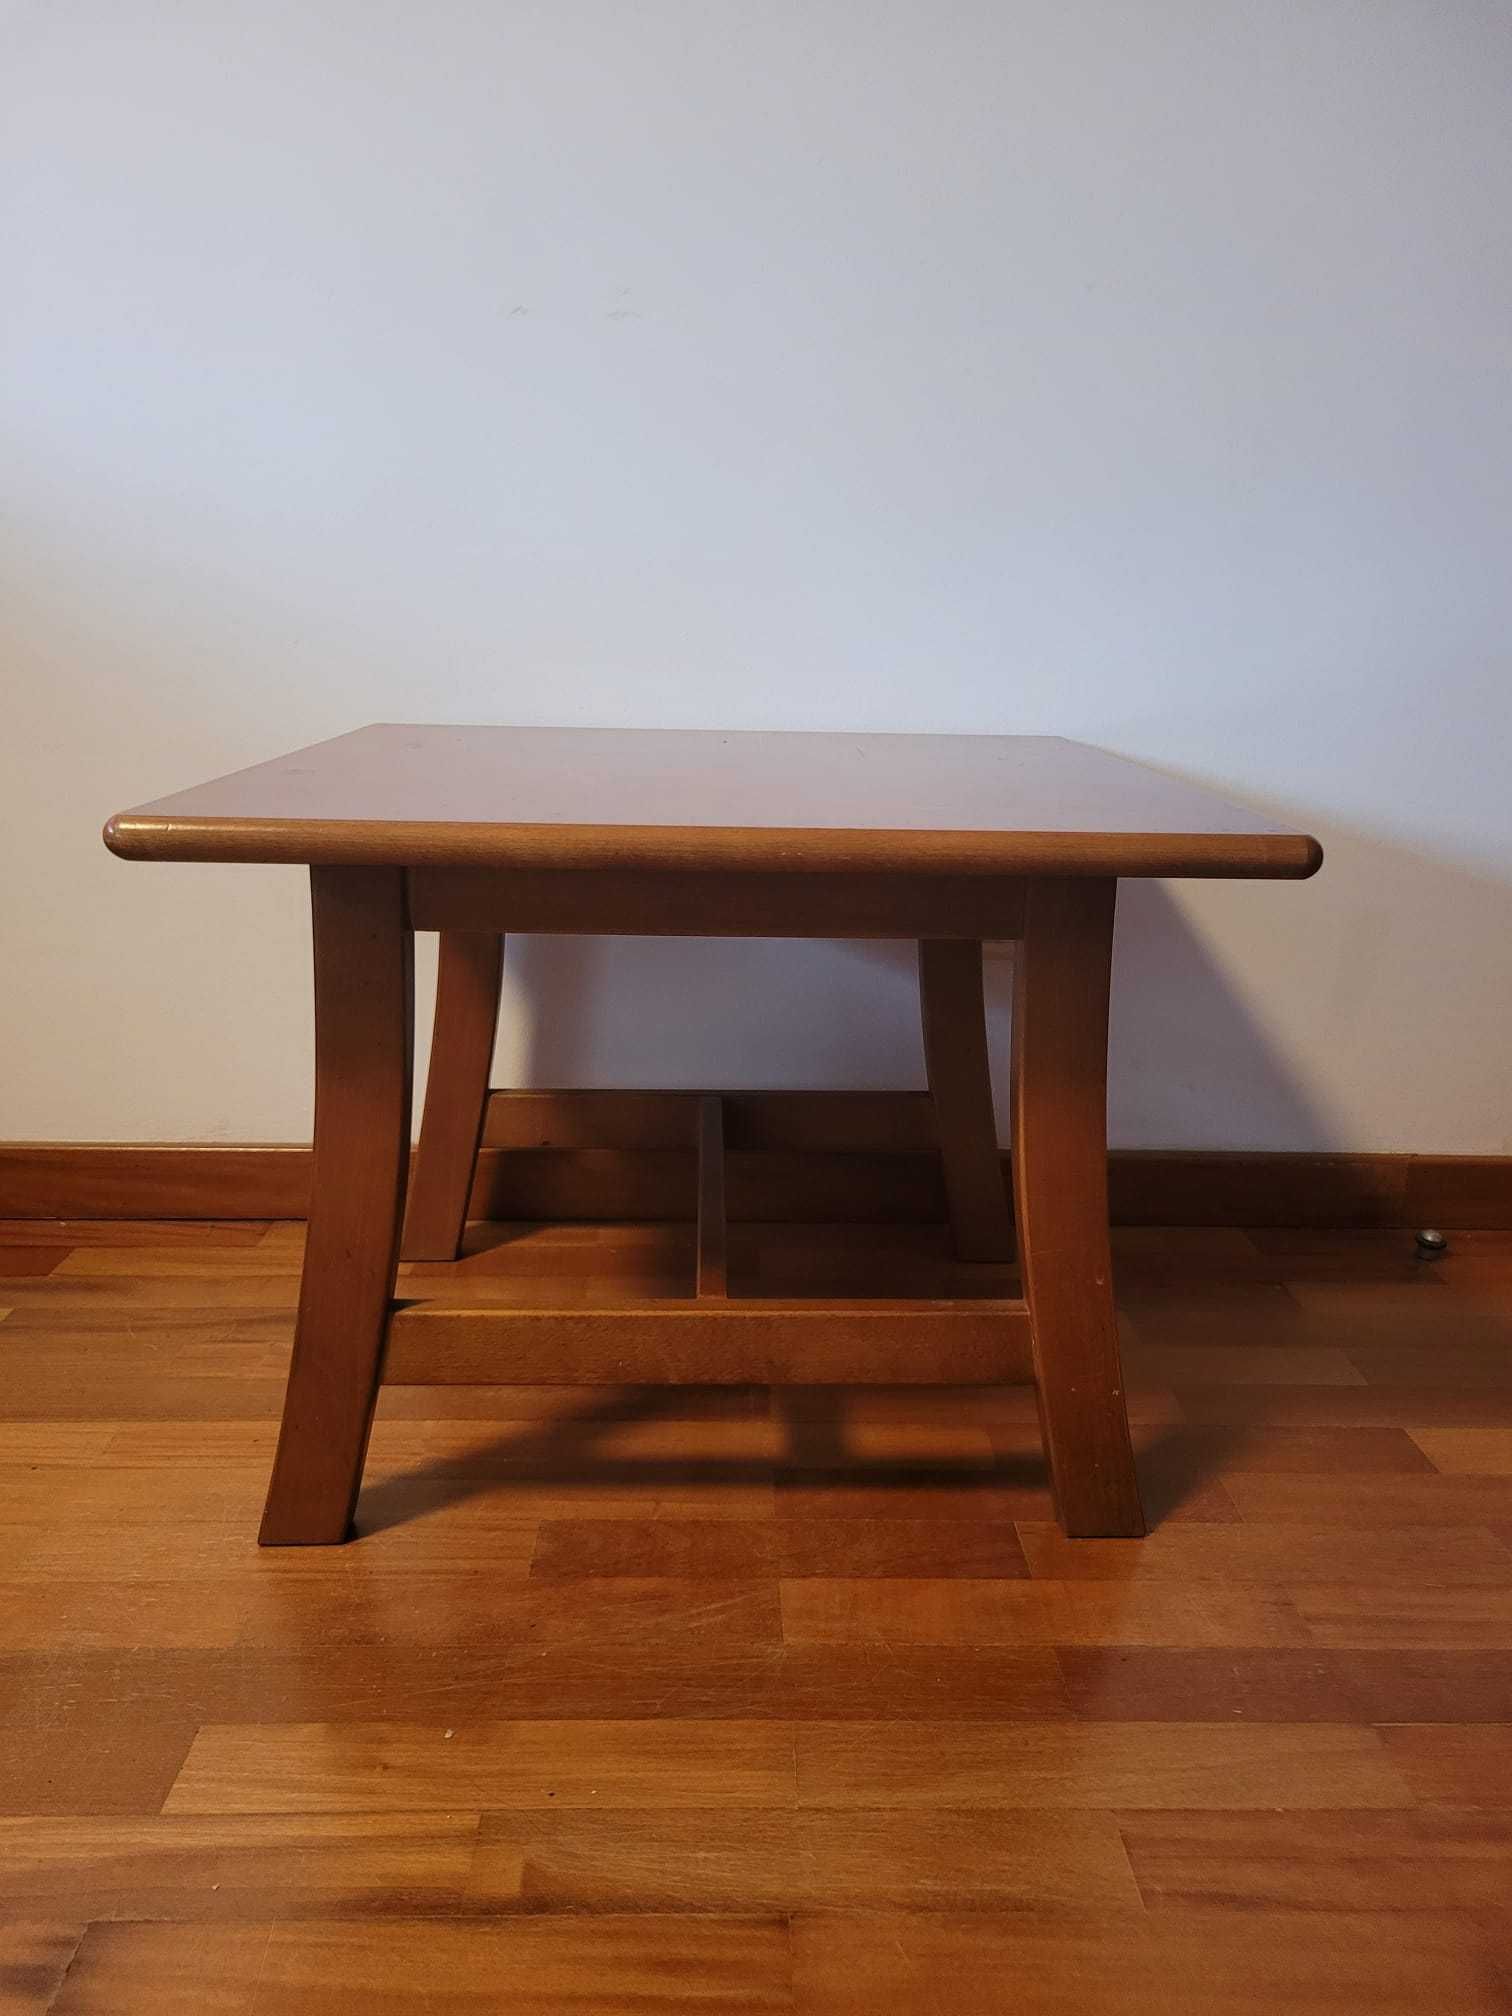 Mesa de apoio madeira/Wooden support table